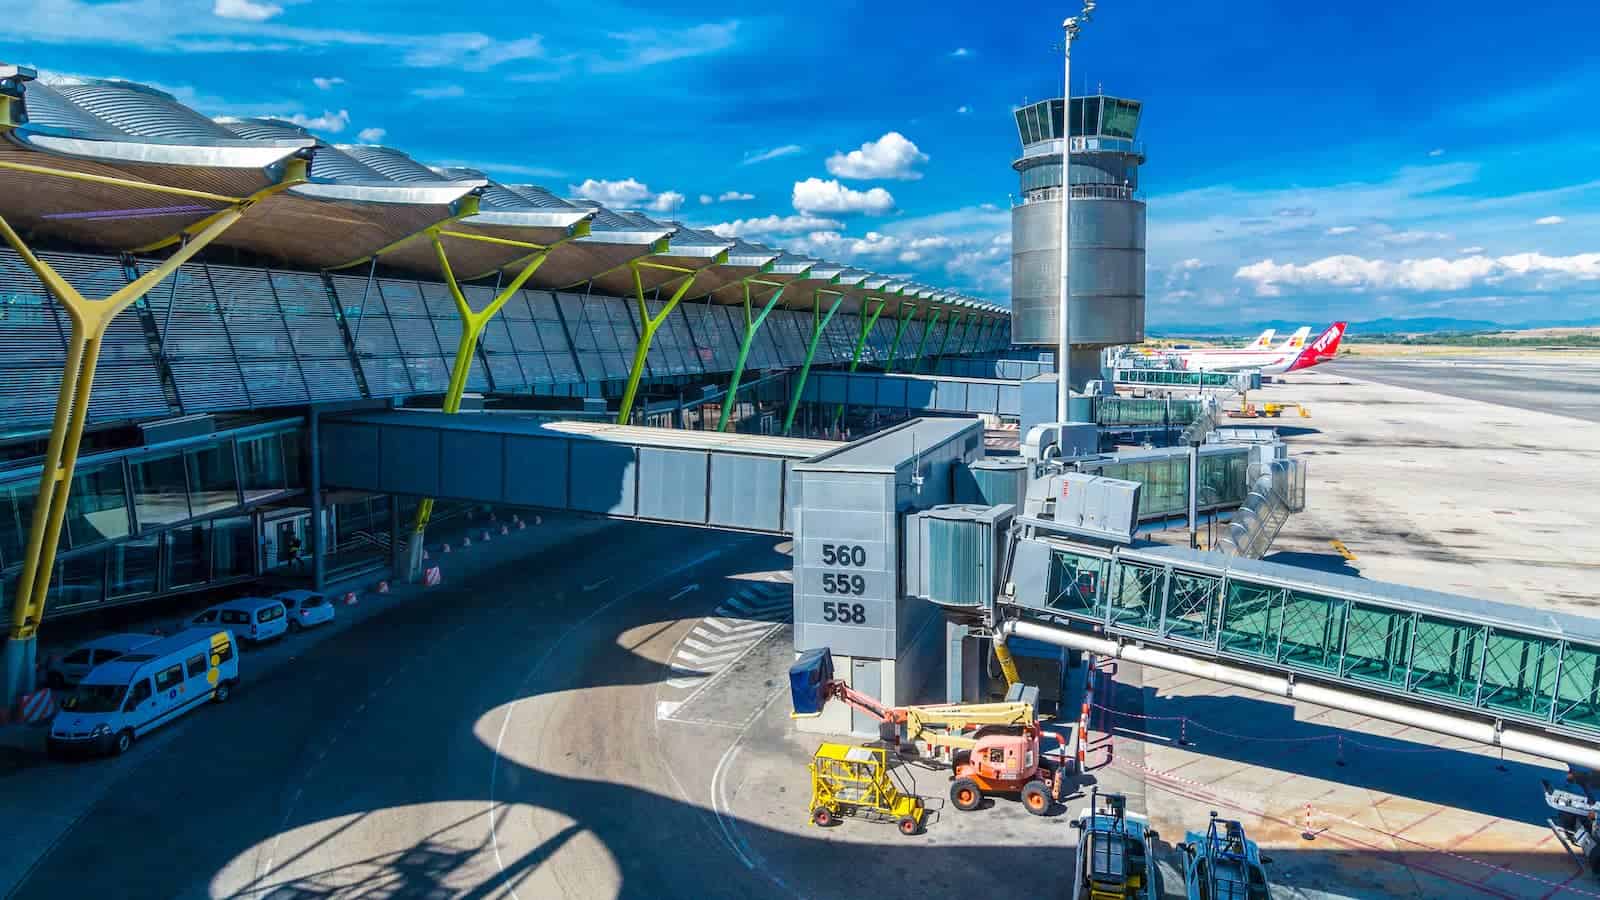 Madrid-Barajas Airport (MAD)